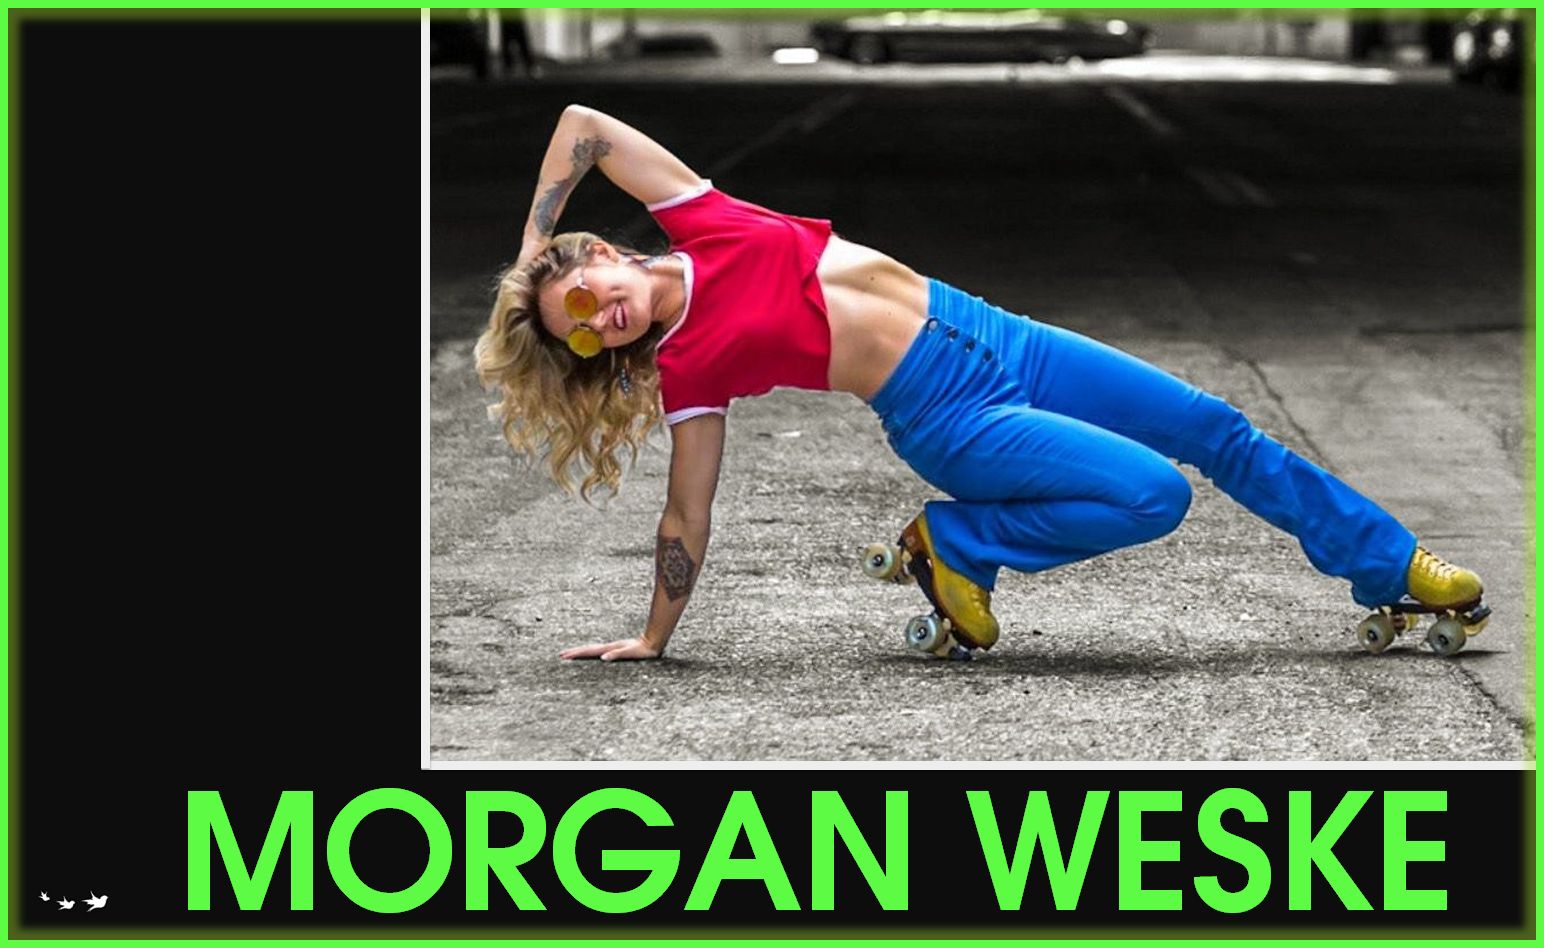 Morgan Weske roller skating career podcast interview business travel website